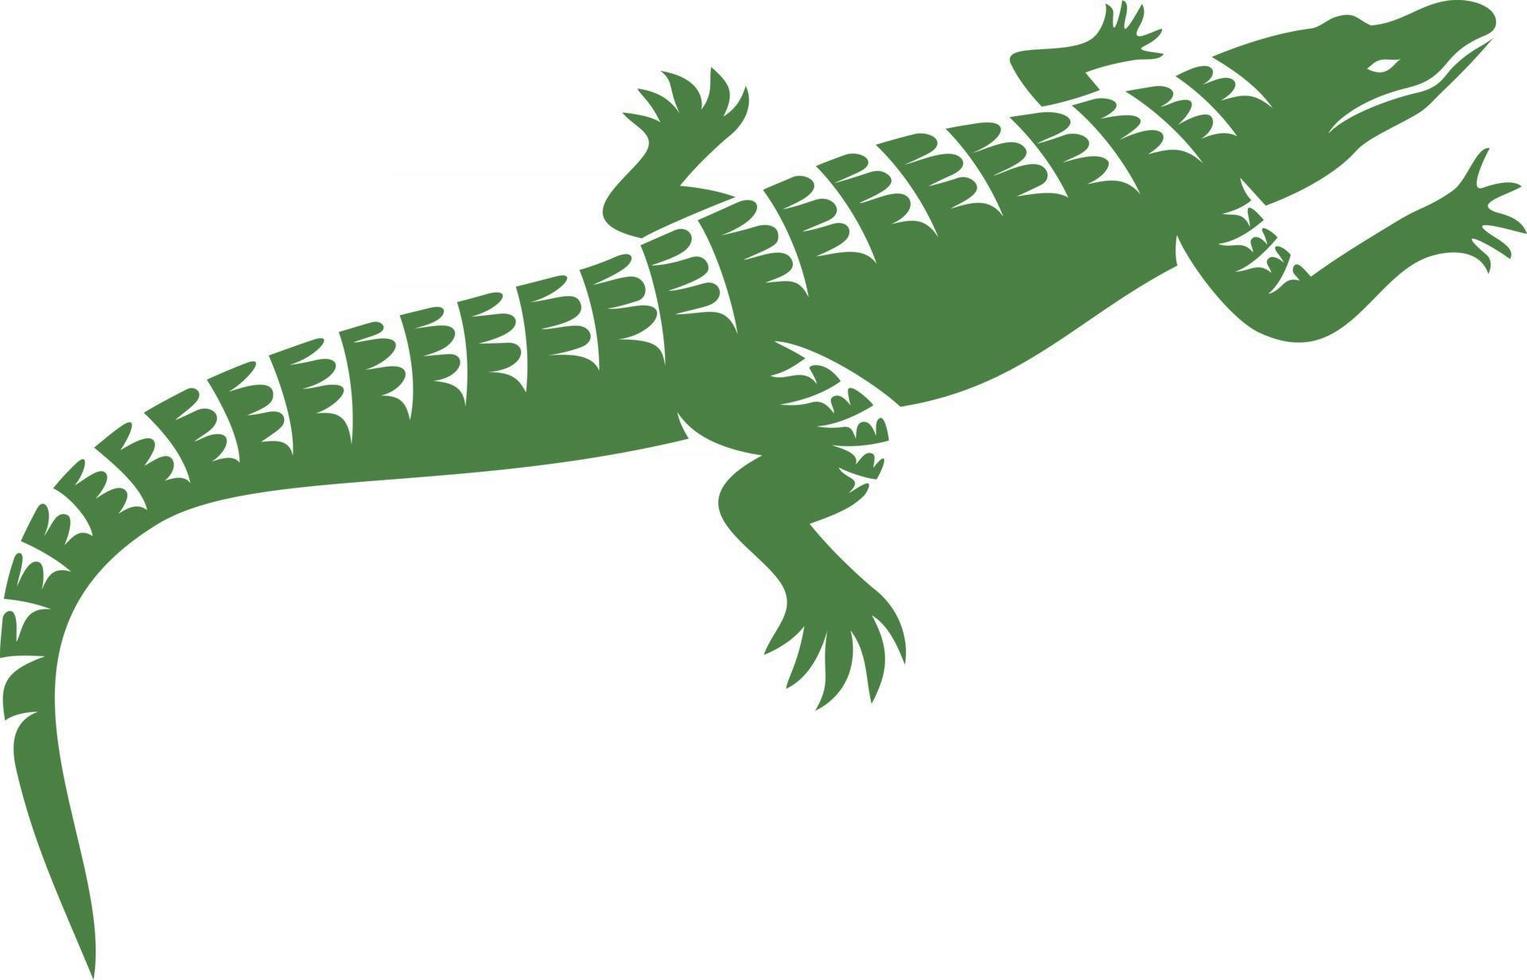 Krokodil- oder Alligatorsymbol vektor